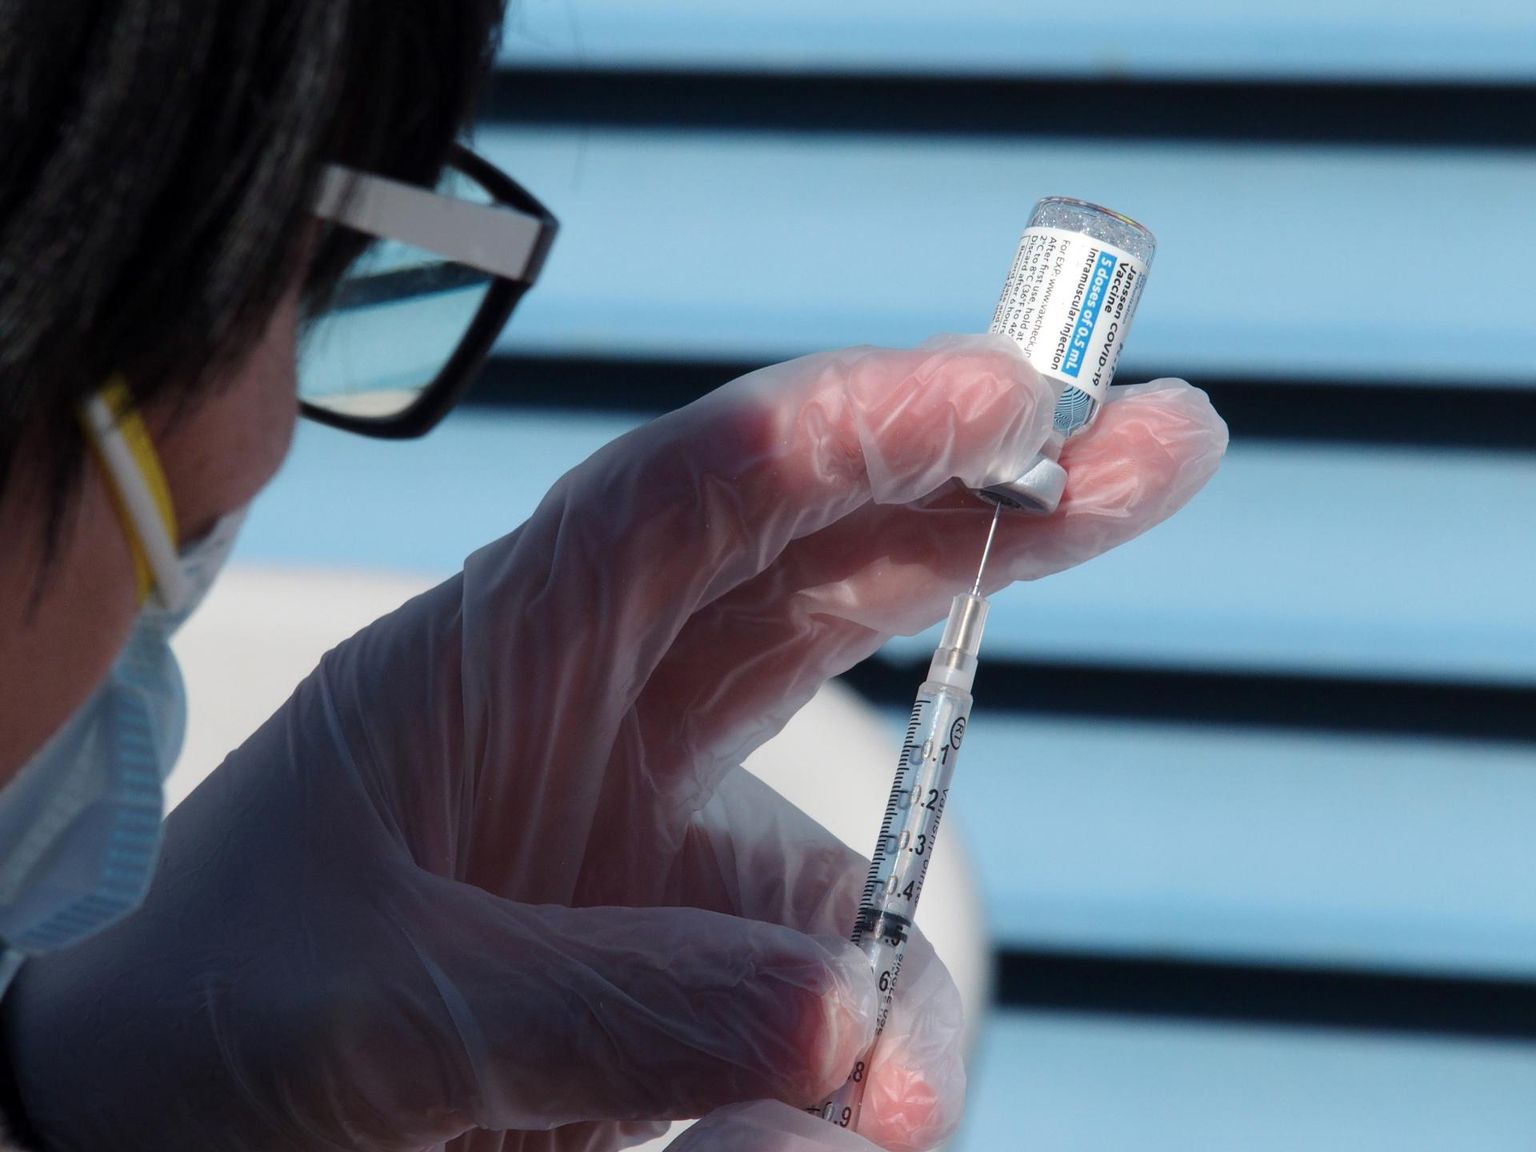 Предприниматель Индрек Кайнг с единомышленниками предложили смелый бартер: Эстония получает вакцину, а производители необходимые для исследований данные.